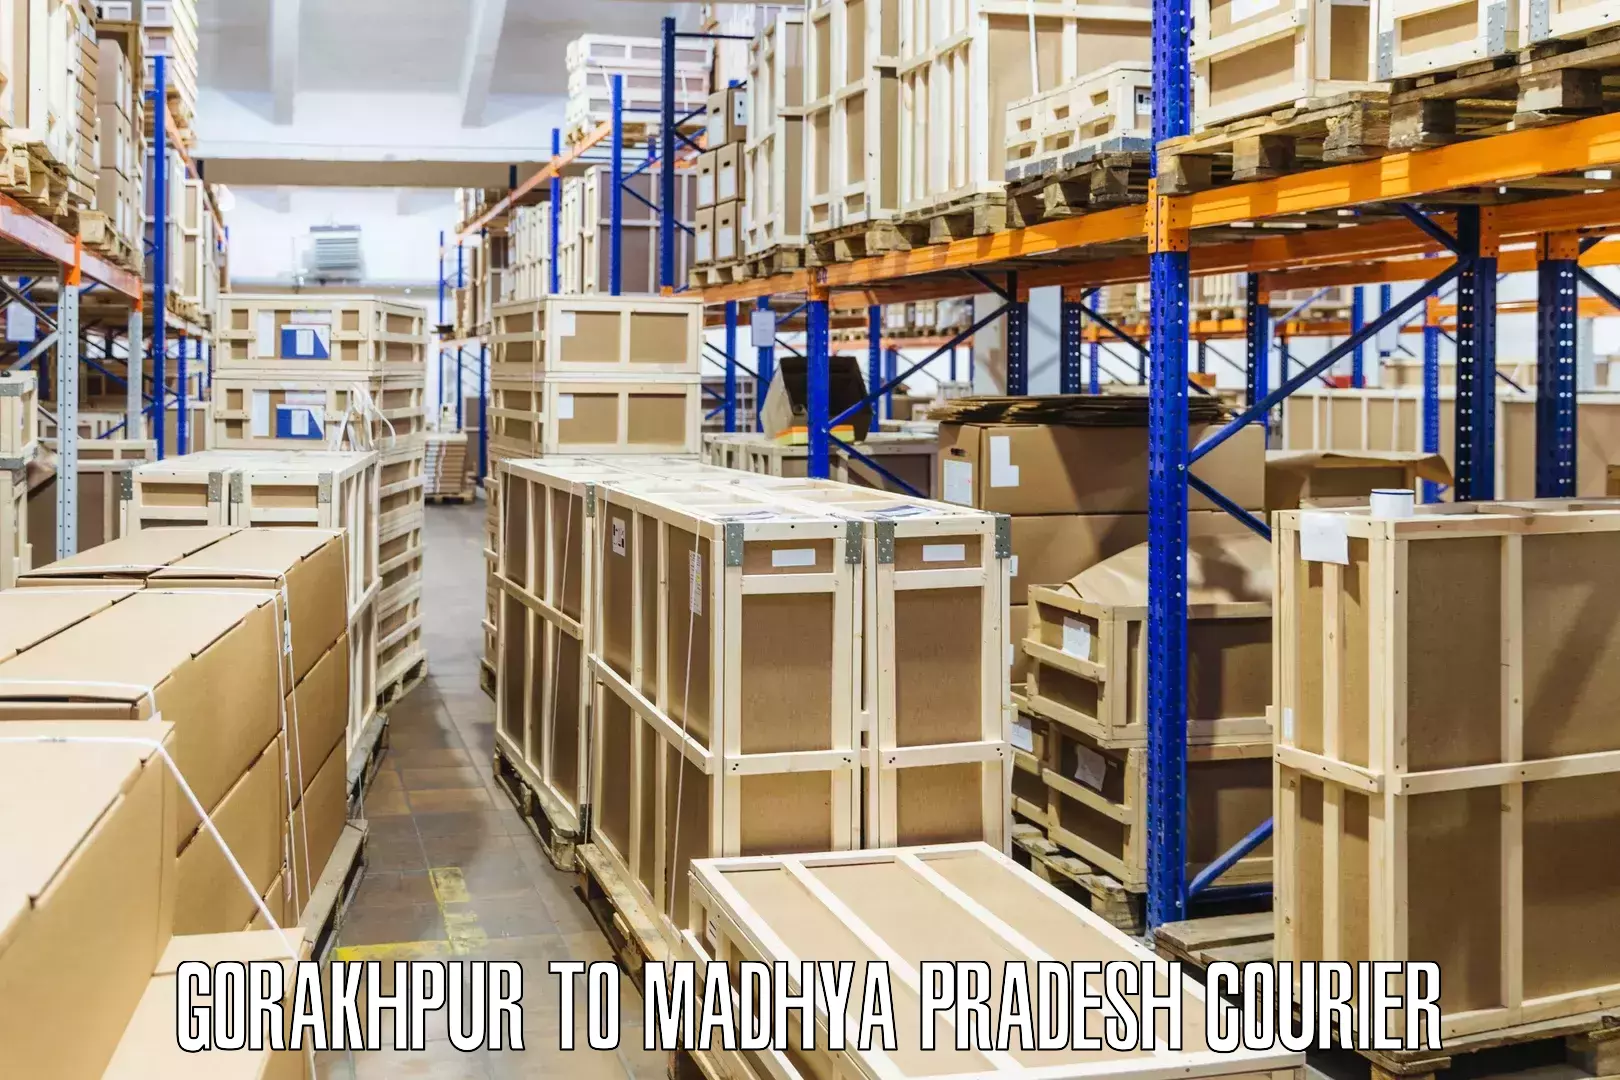 E-commerce fulfillment Gorakhpur to Ranchha